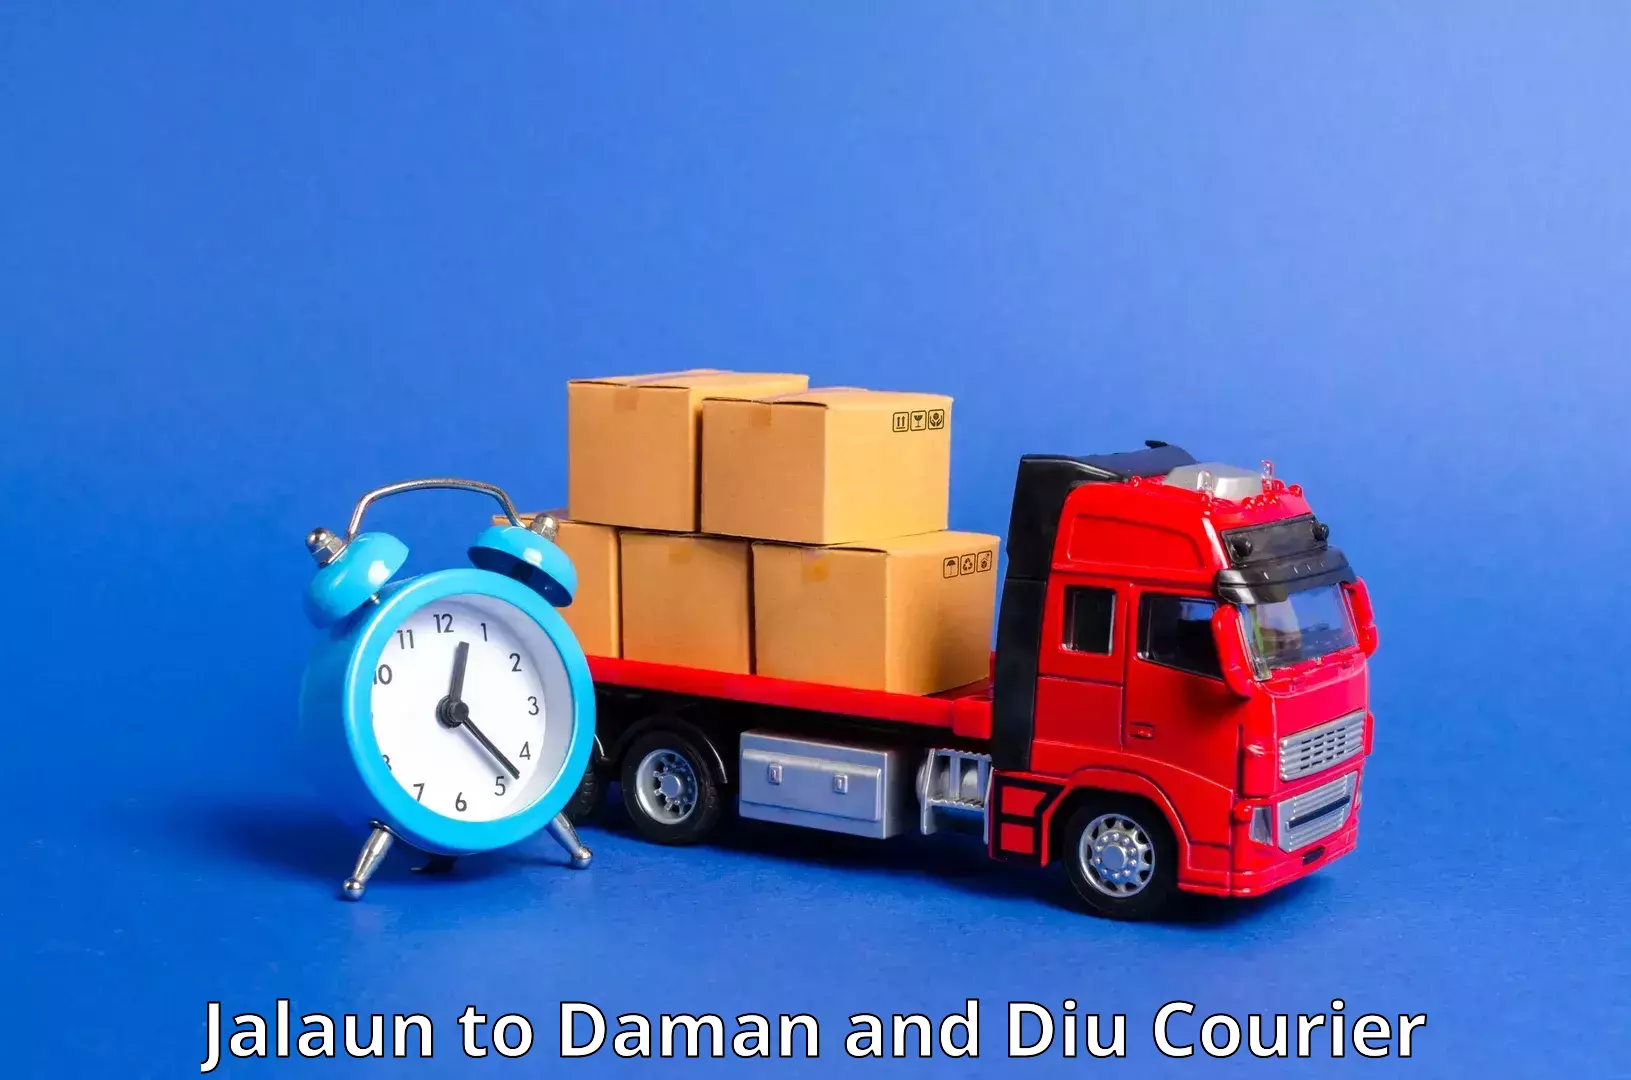 Multi-city courier Jalaun to Daman